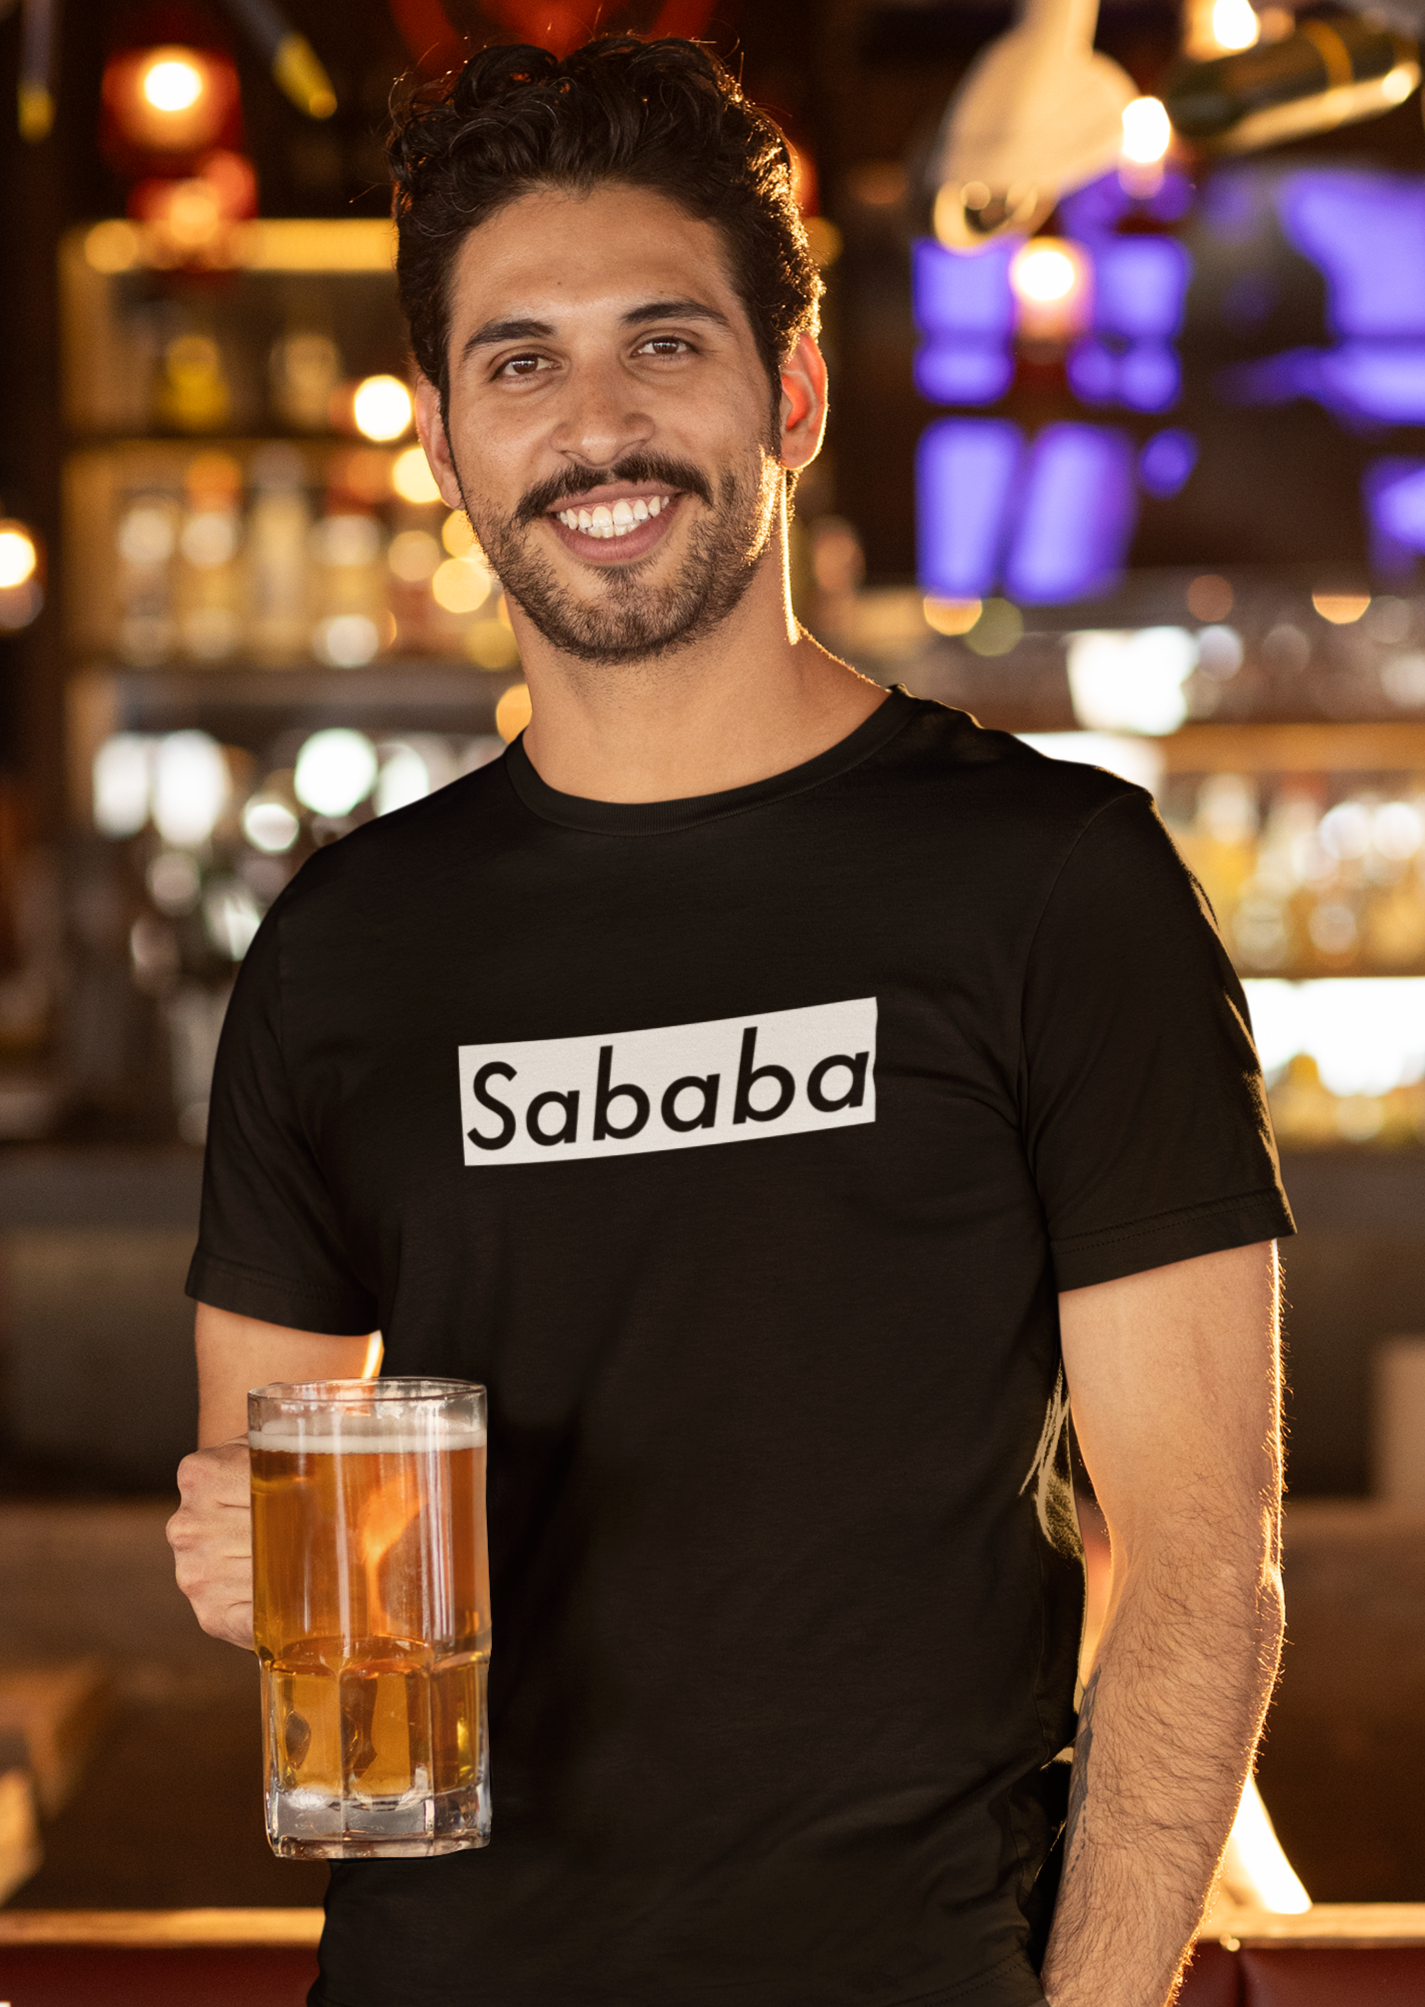 Sababa Logo B&W Men's Tee